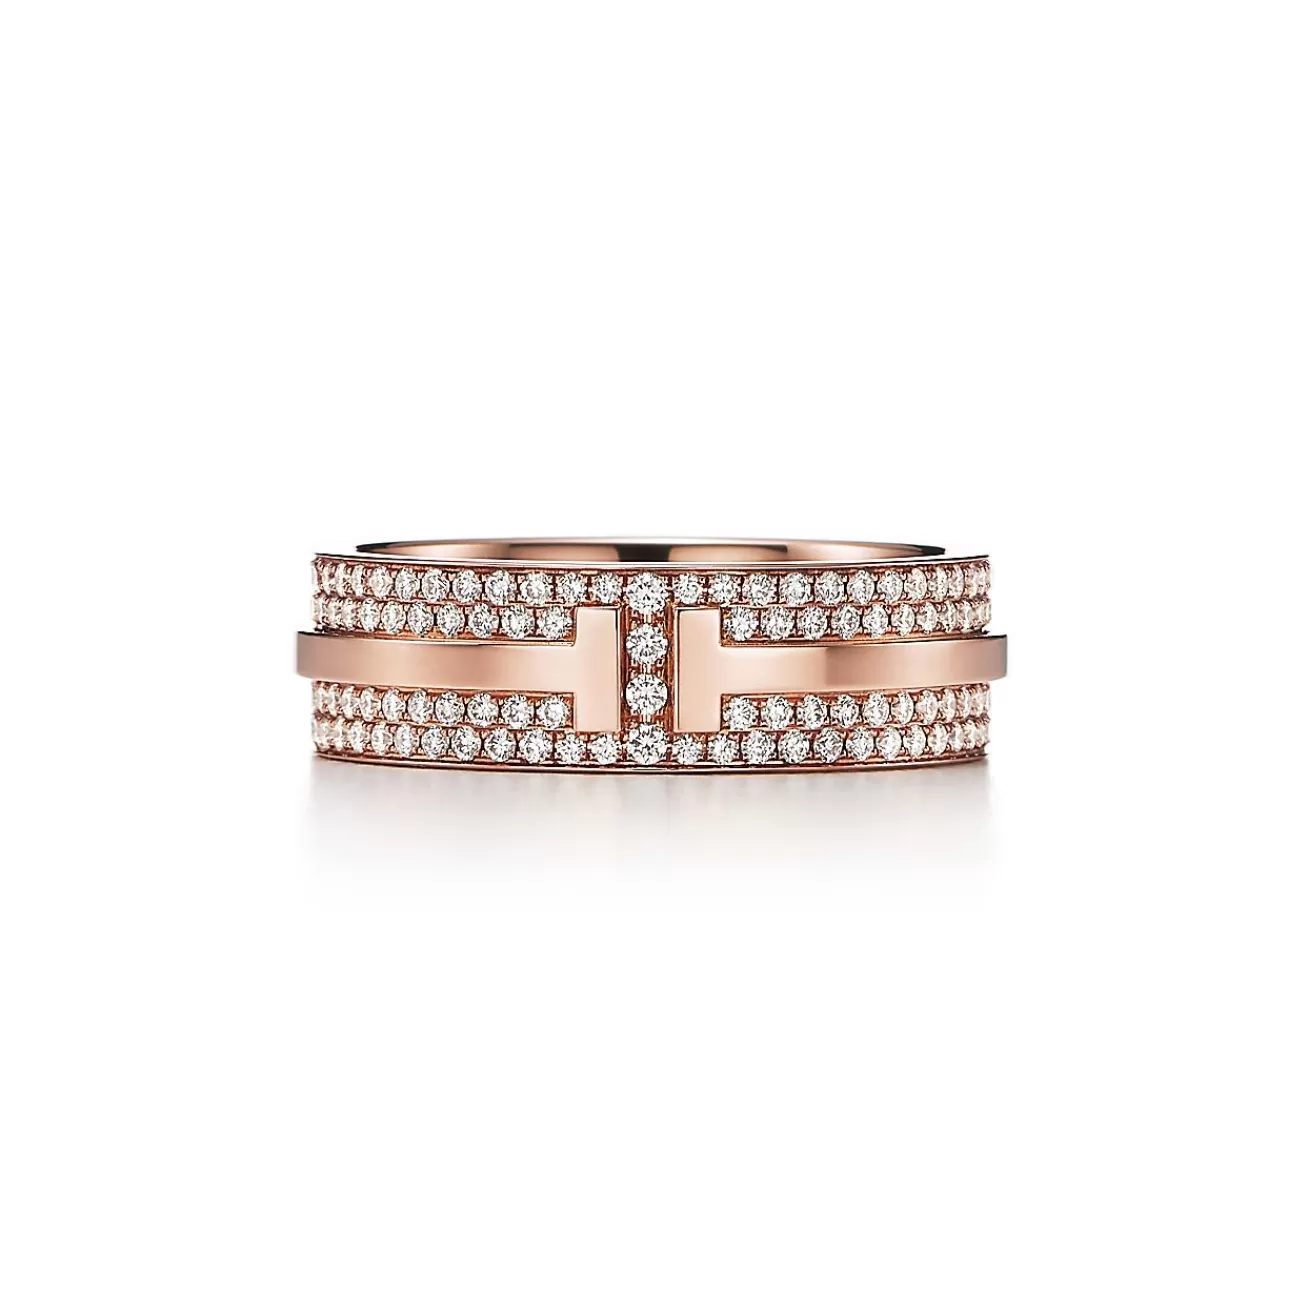 Tiffany & Co. Tiffany T wide pavé diamond ring in 18k rose gold, 5.8 mm wide. | ^Women Rings | Men's Jewelry